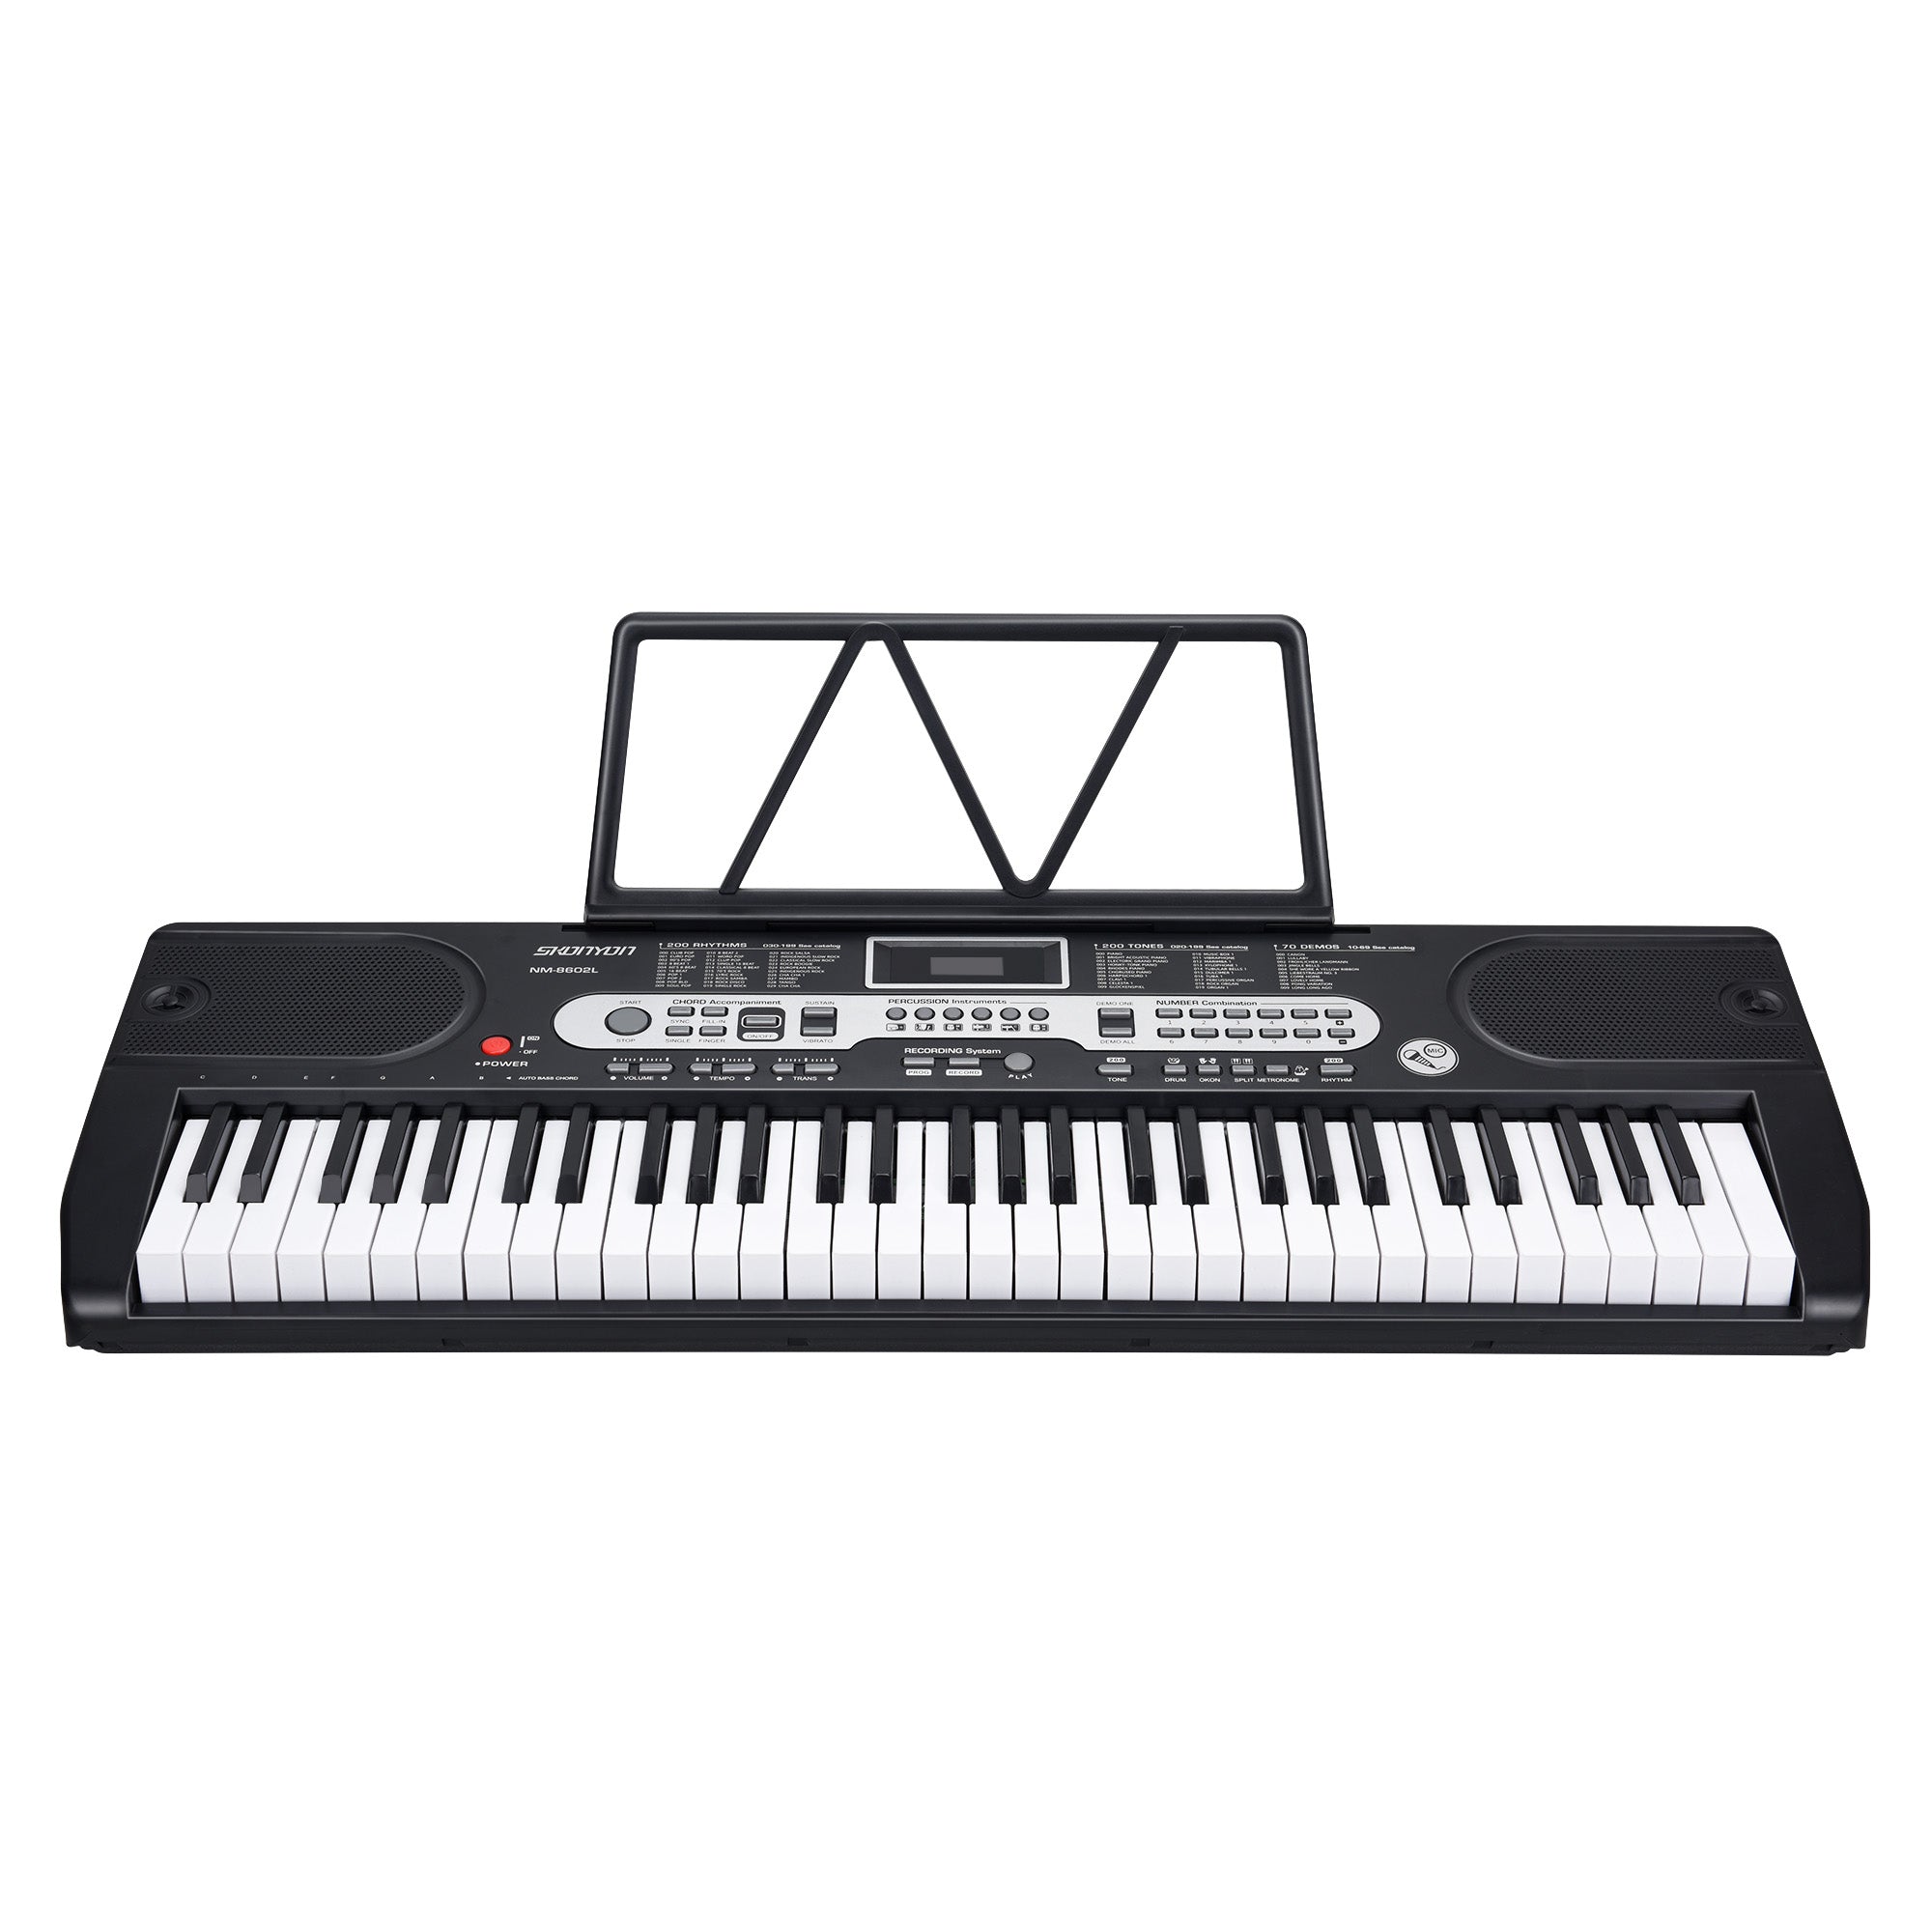 SKONYON Piano Keyboard 61 Key Portable Electric Keyboard